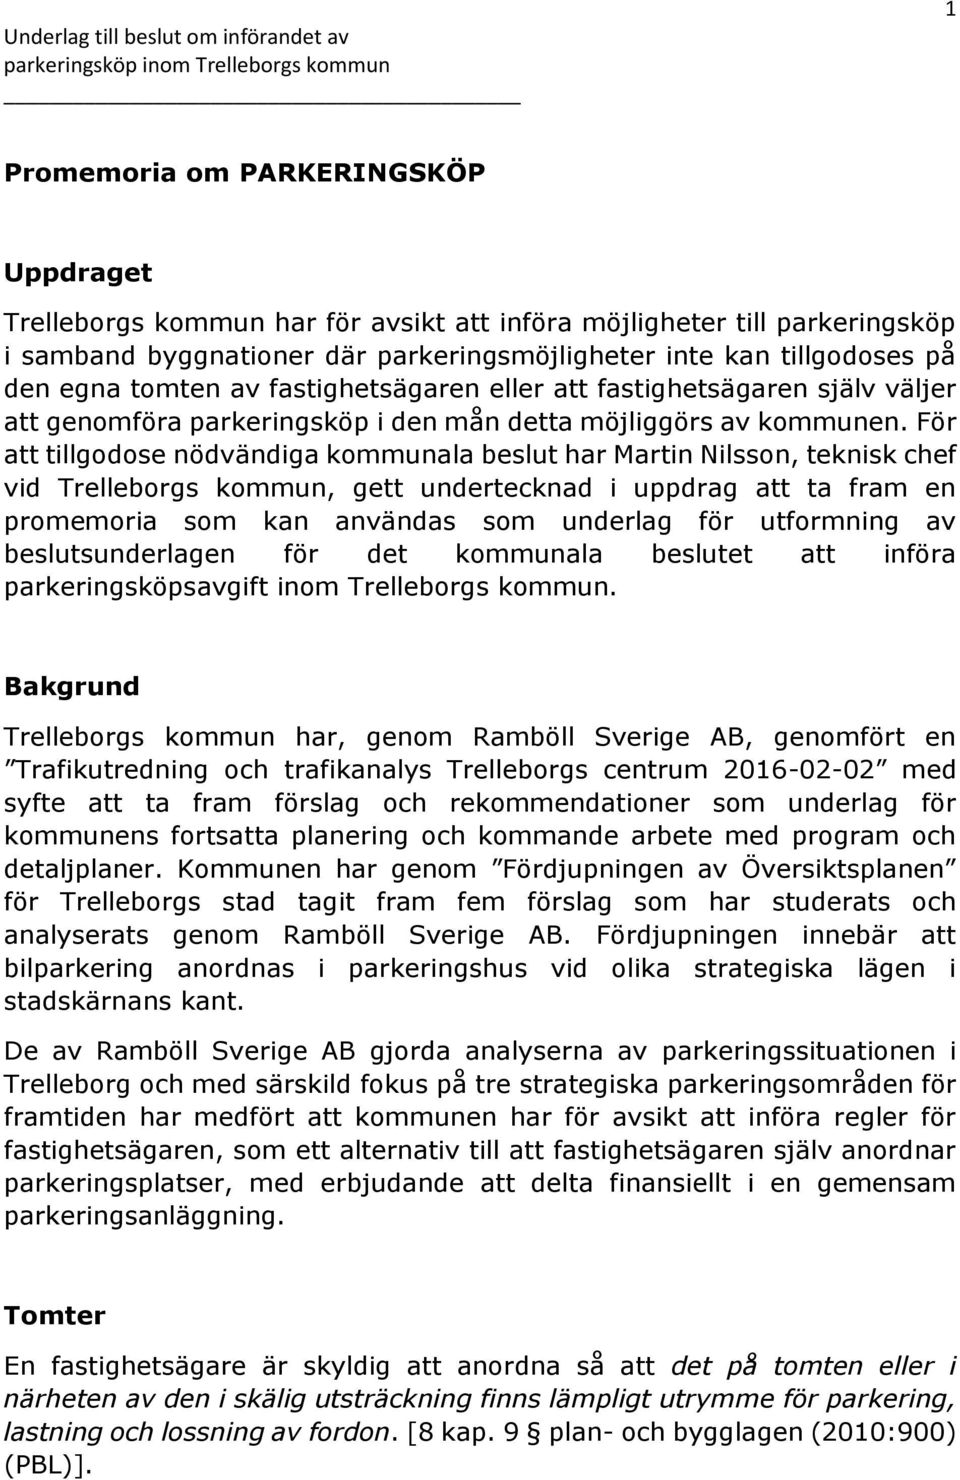 För att tillgodose nödvändiga kommunala beslut har Martin Nilsson, teknisk chef vid Trelleborgs kommun, gett undertecknad i uppdrag att ta fram en promemoria som kan användas som underlag för